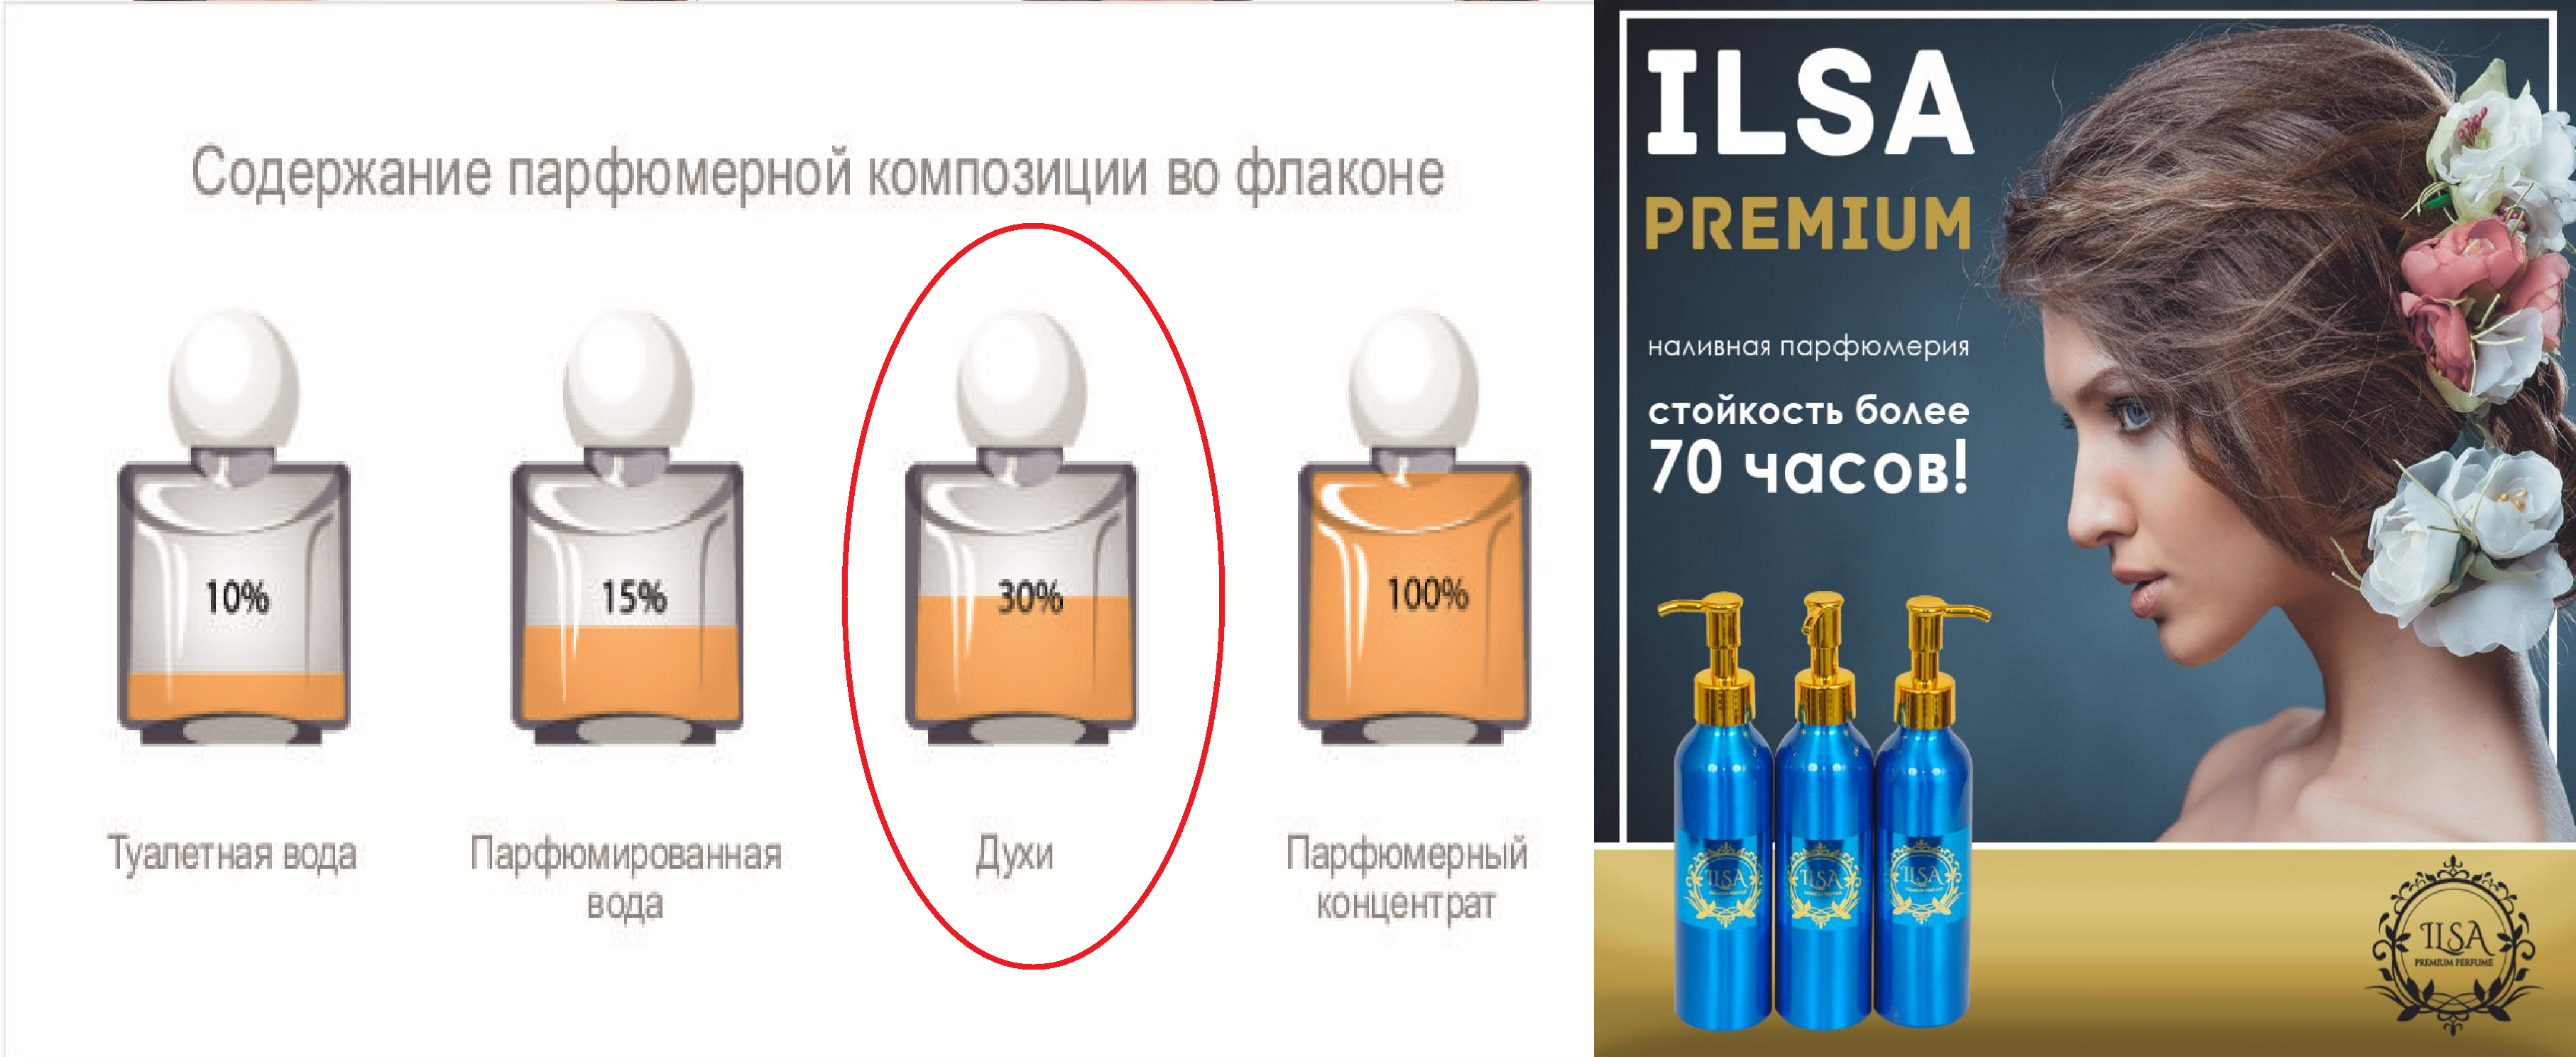 Ilsa -Premium ! 30%   ().  70  !24